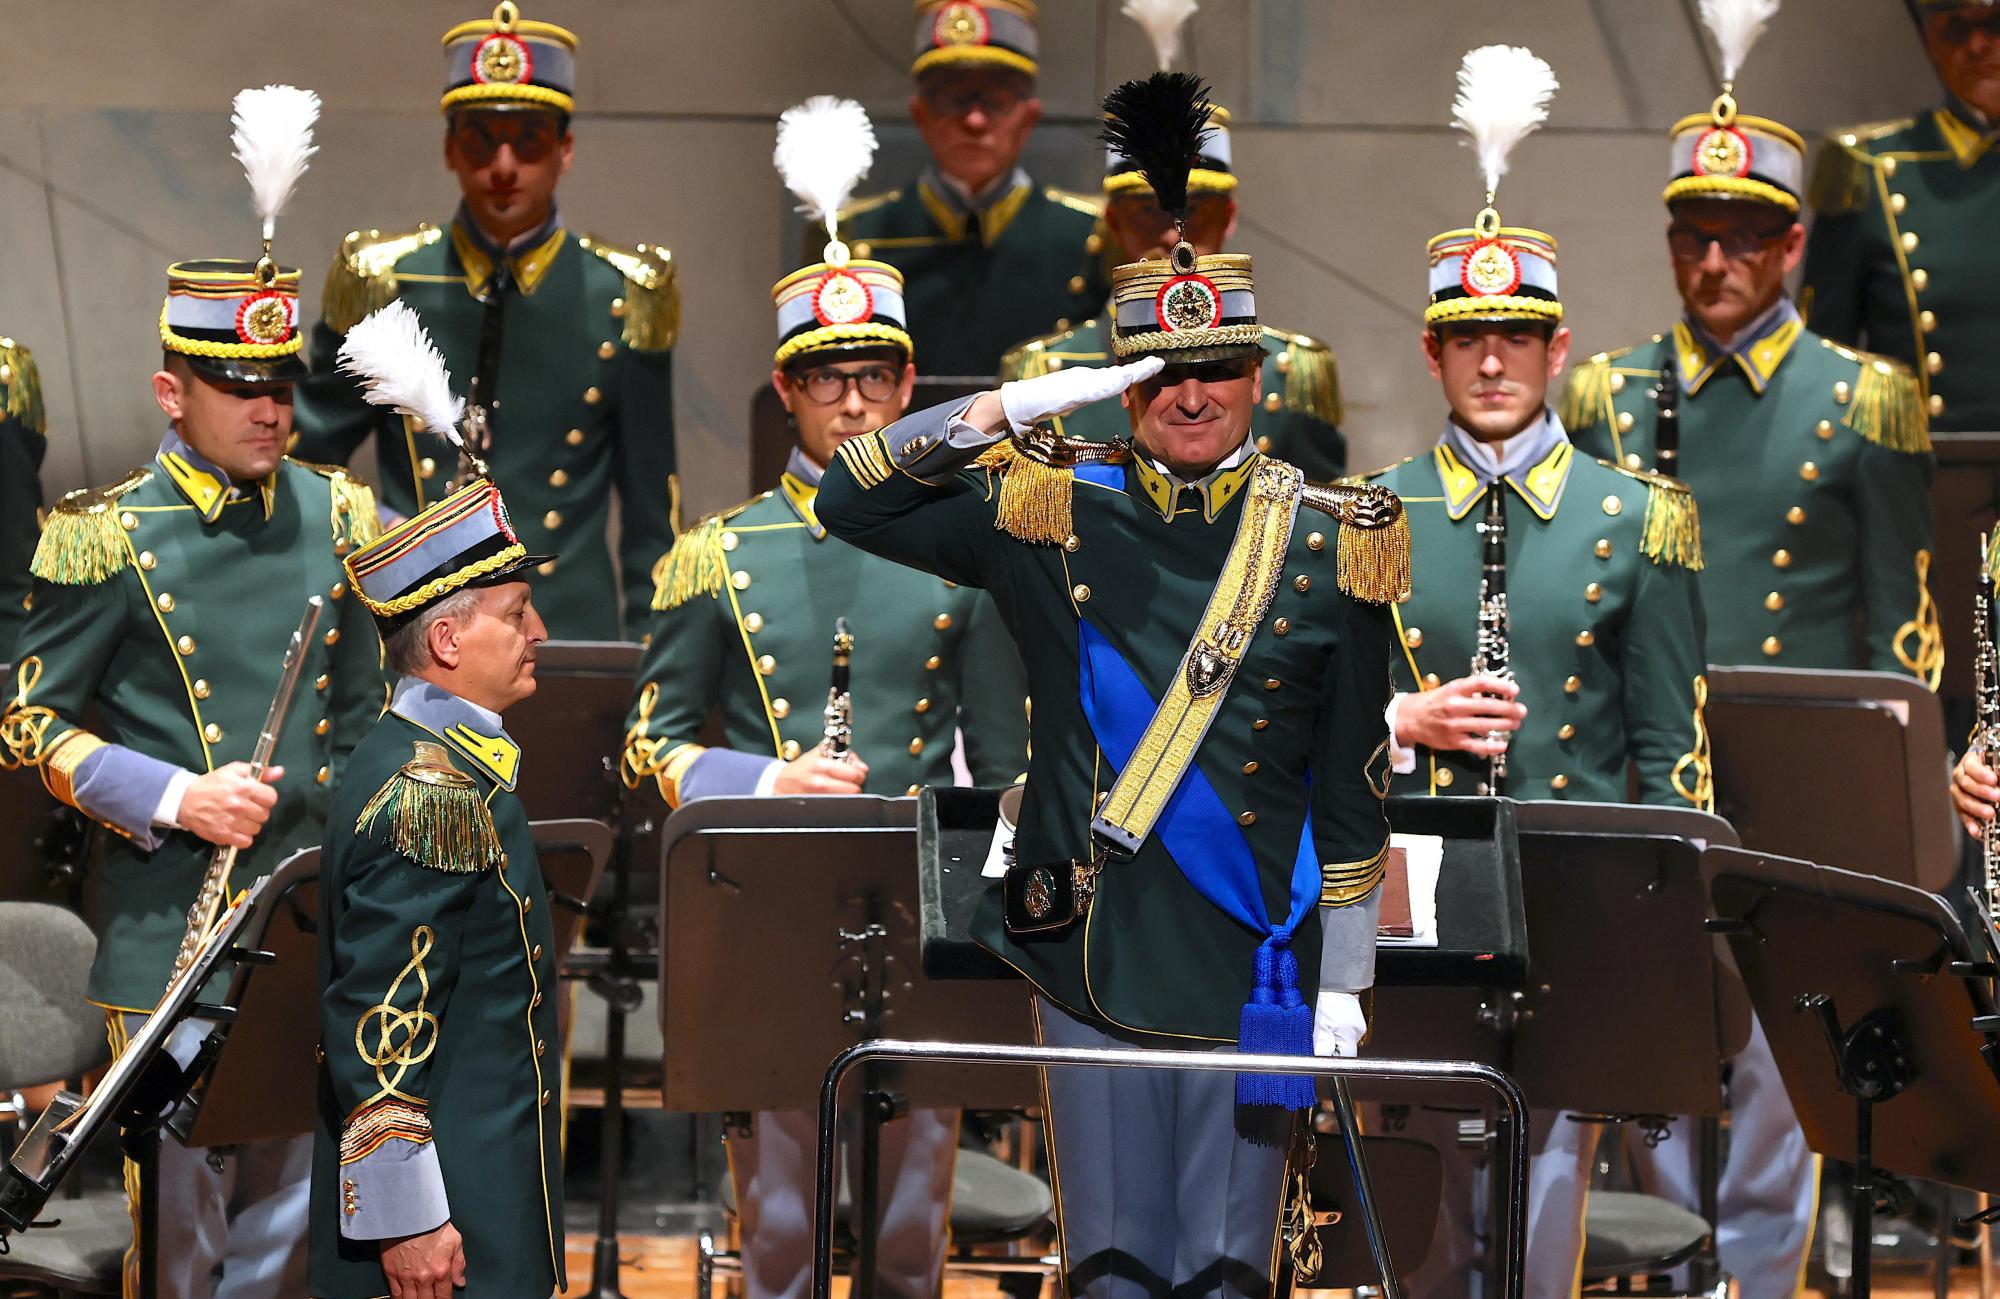 Il saluto della Banda musicale della Guardia di Finanza al termine del concerto al Teatro Carlo Felice